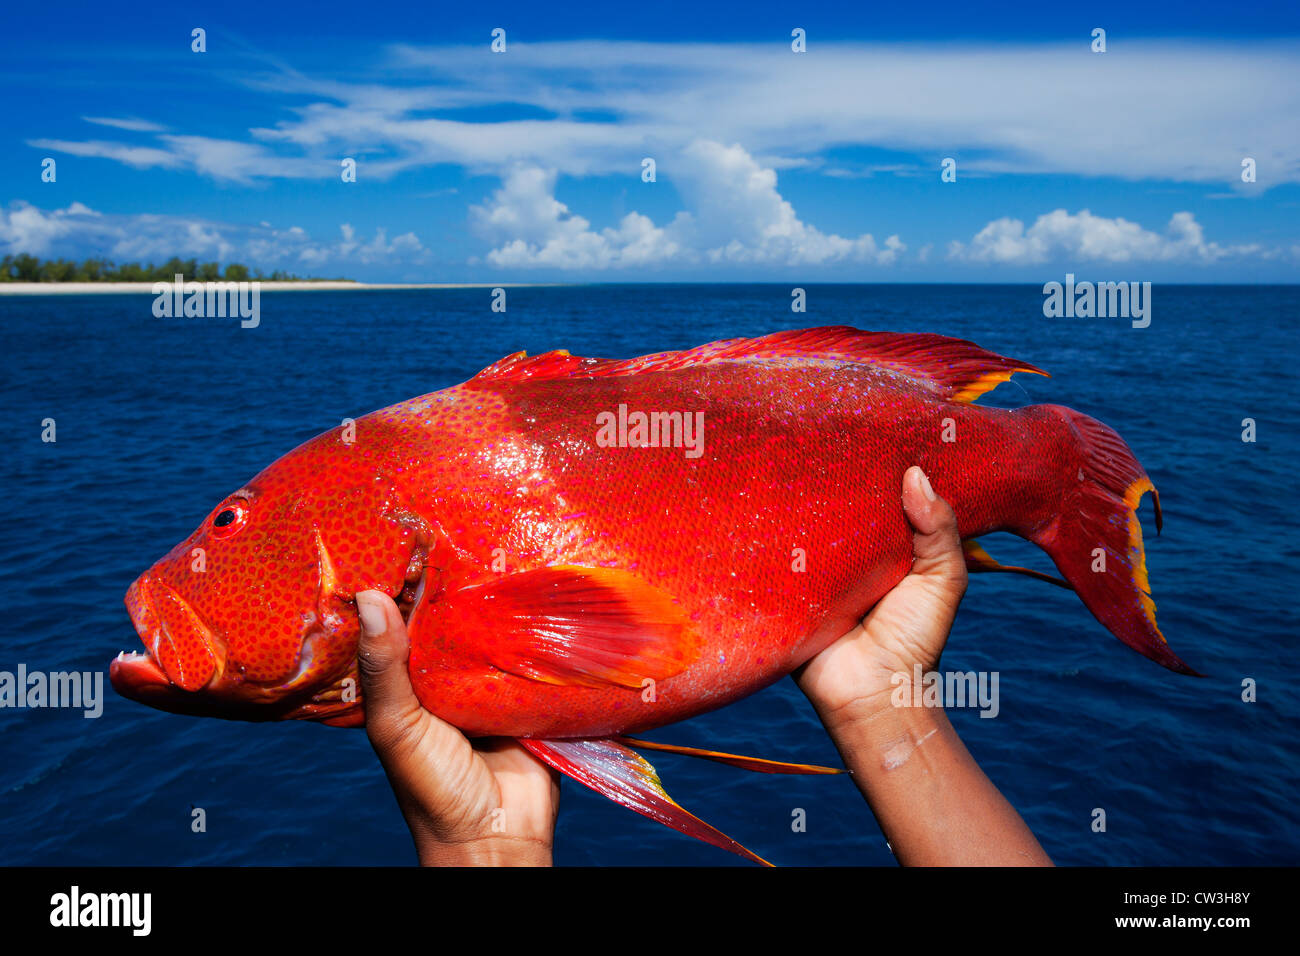 Red marine fish.Seychelles Stock Photo